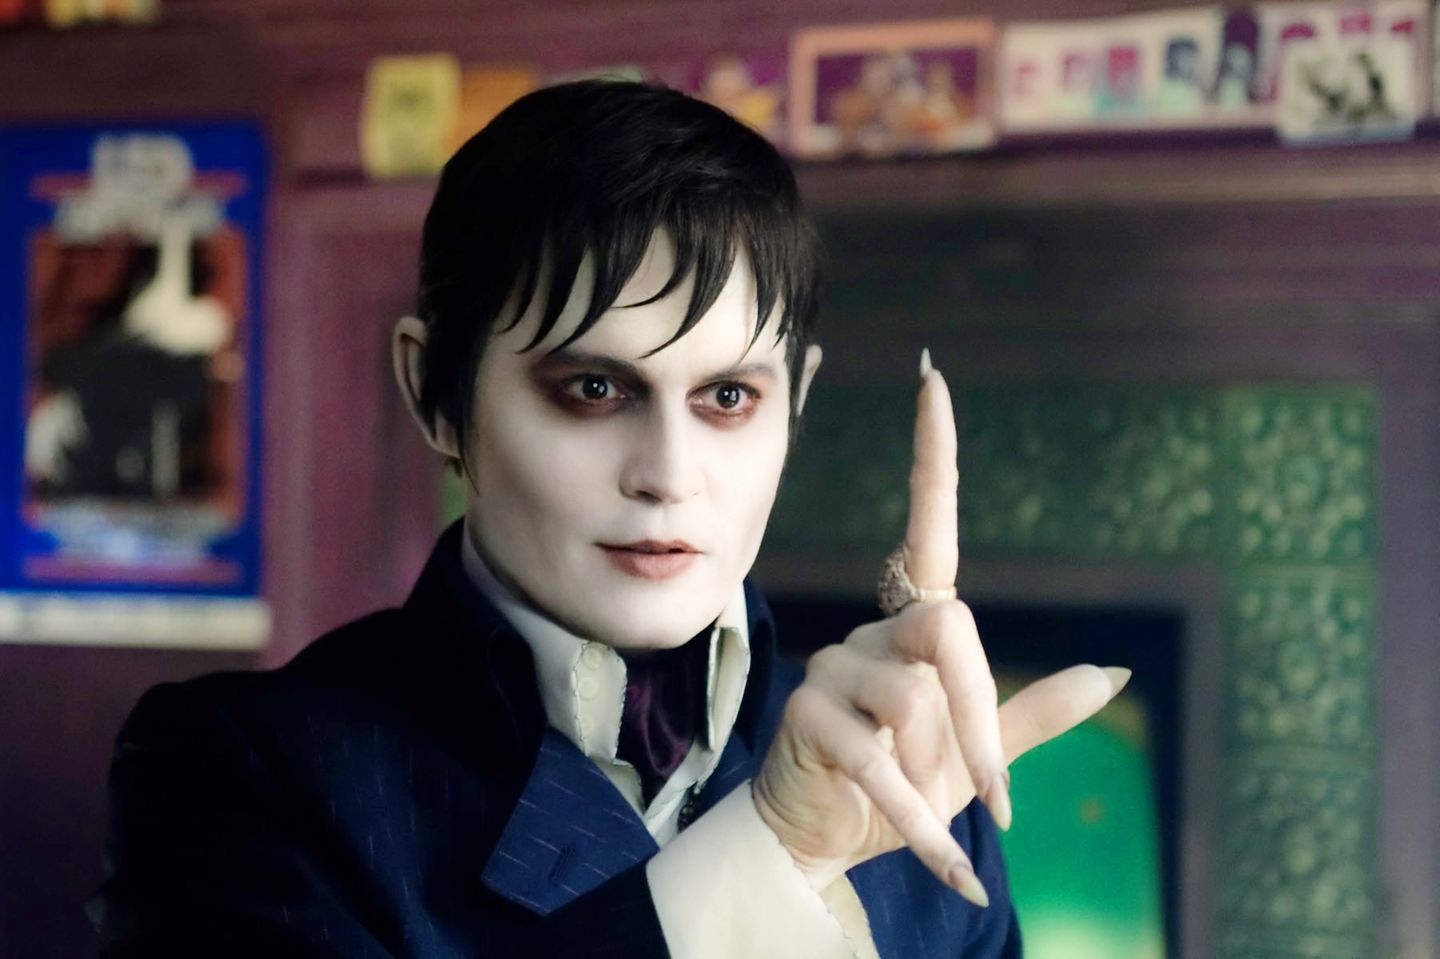 Leichenblass und mit ganz schön gruseligen Fingernägeln spielt der charismatische Schauspieler den Vampir "Barnabas Collins" in "Dark Shadows" (2012).